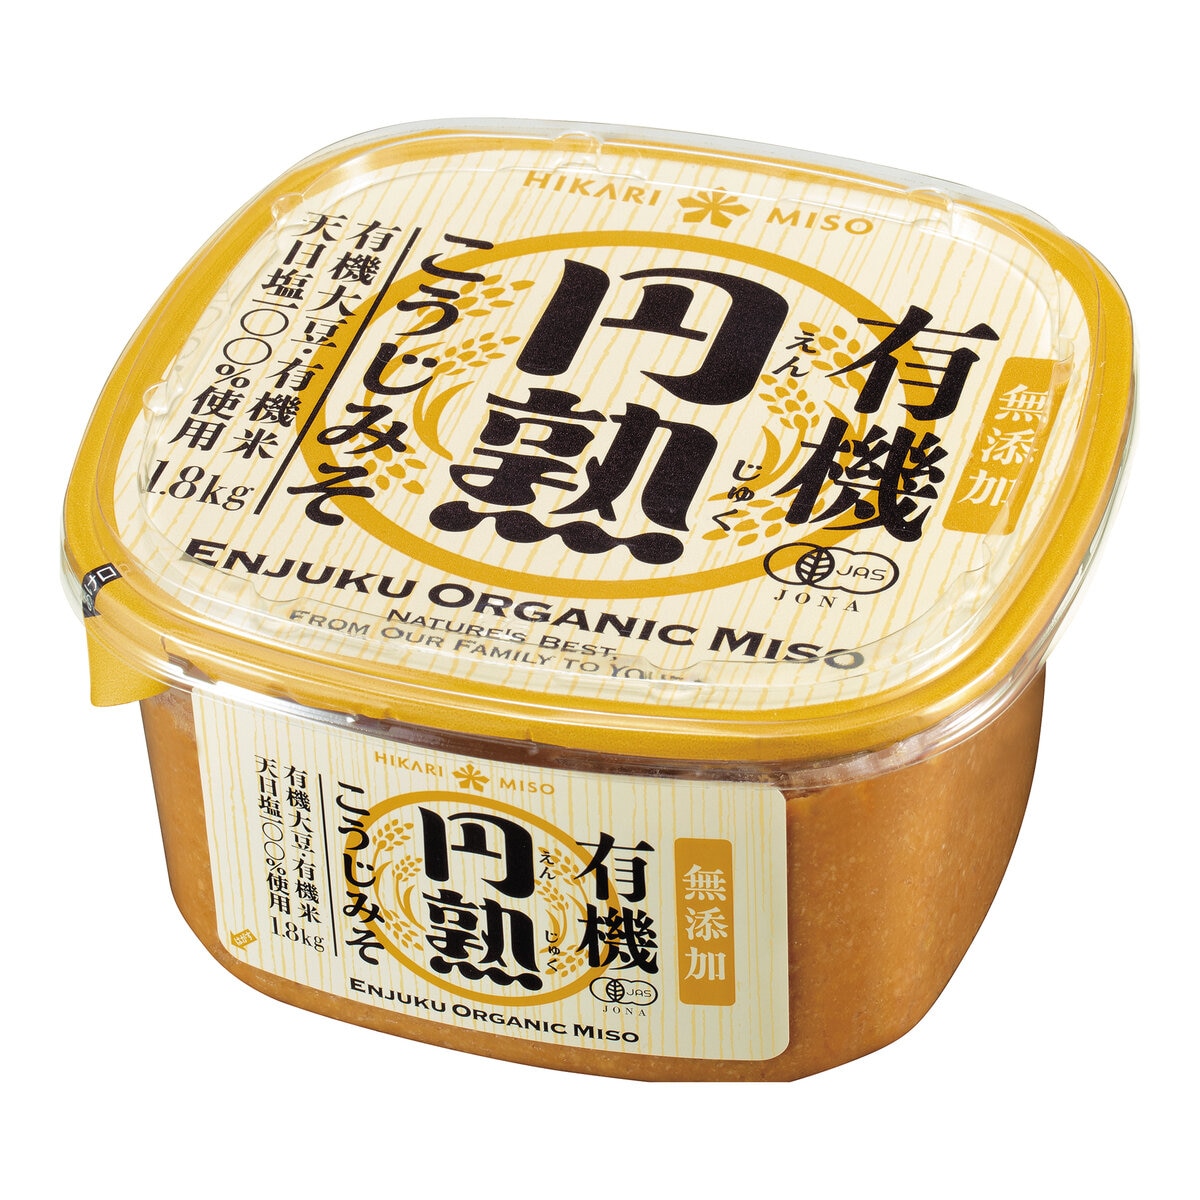 有機円熟こうじみそ 1.8kg | Costco Japan